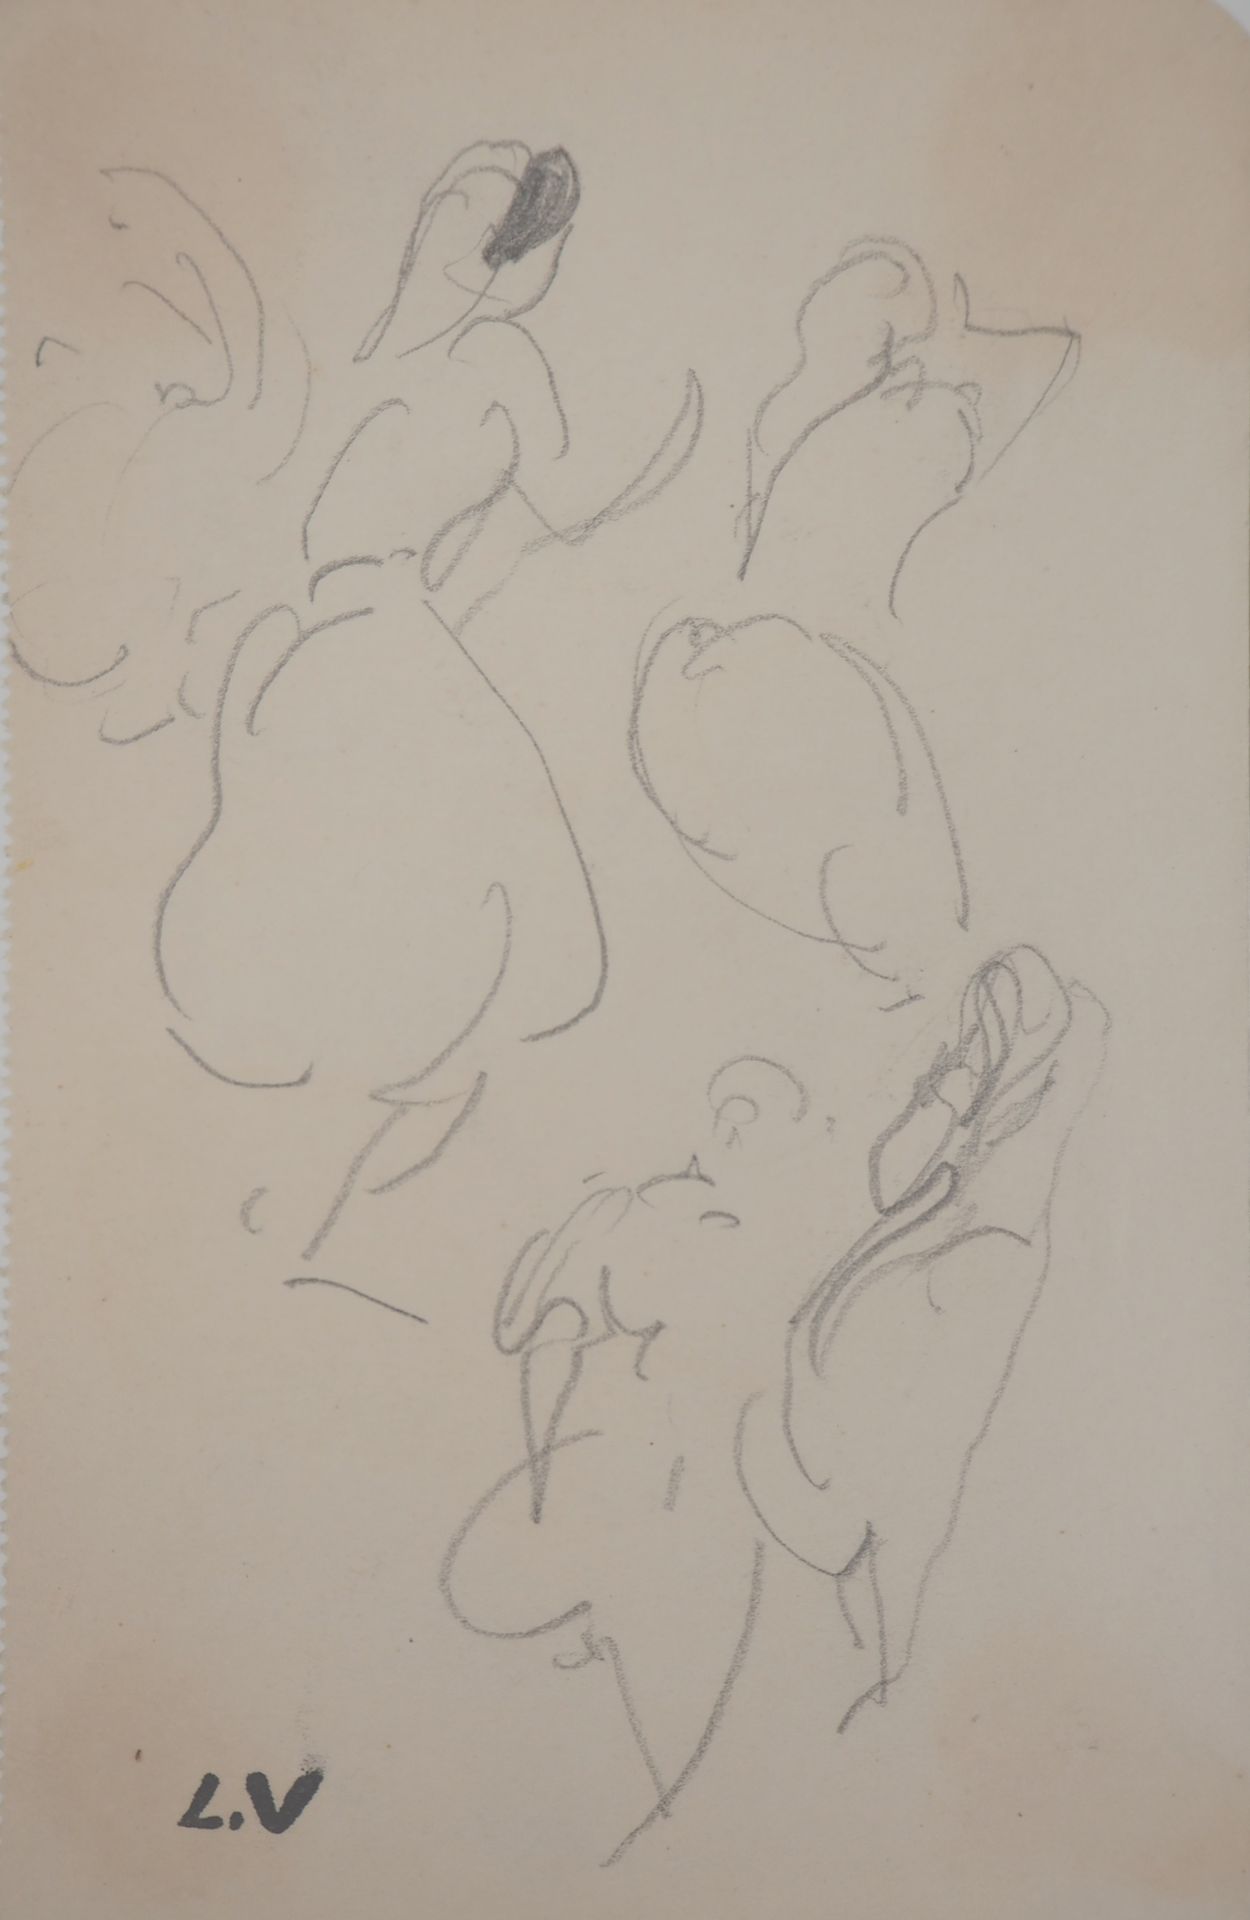 Louis VALTAT 路易斯-瓦尔塔 (1869-1952)

马格里布妇女

原始铅笔画

签名：左下角有L.V的字样

展览图像：17 x 11厘米

&hellip;